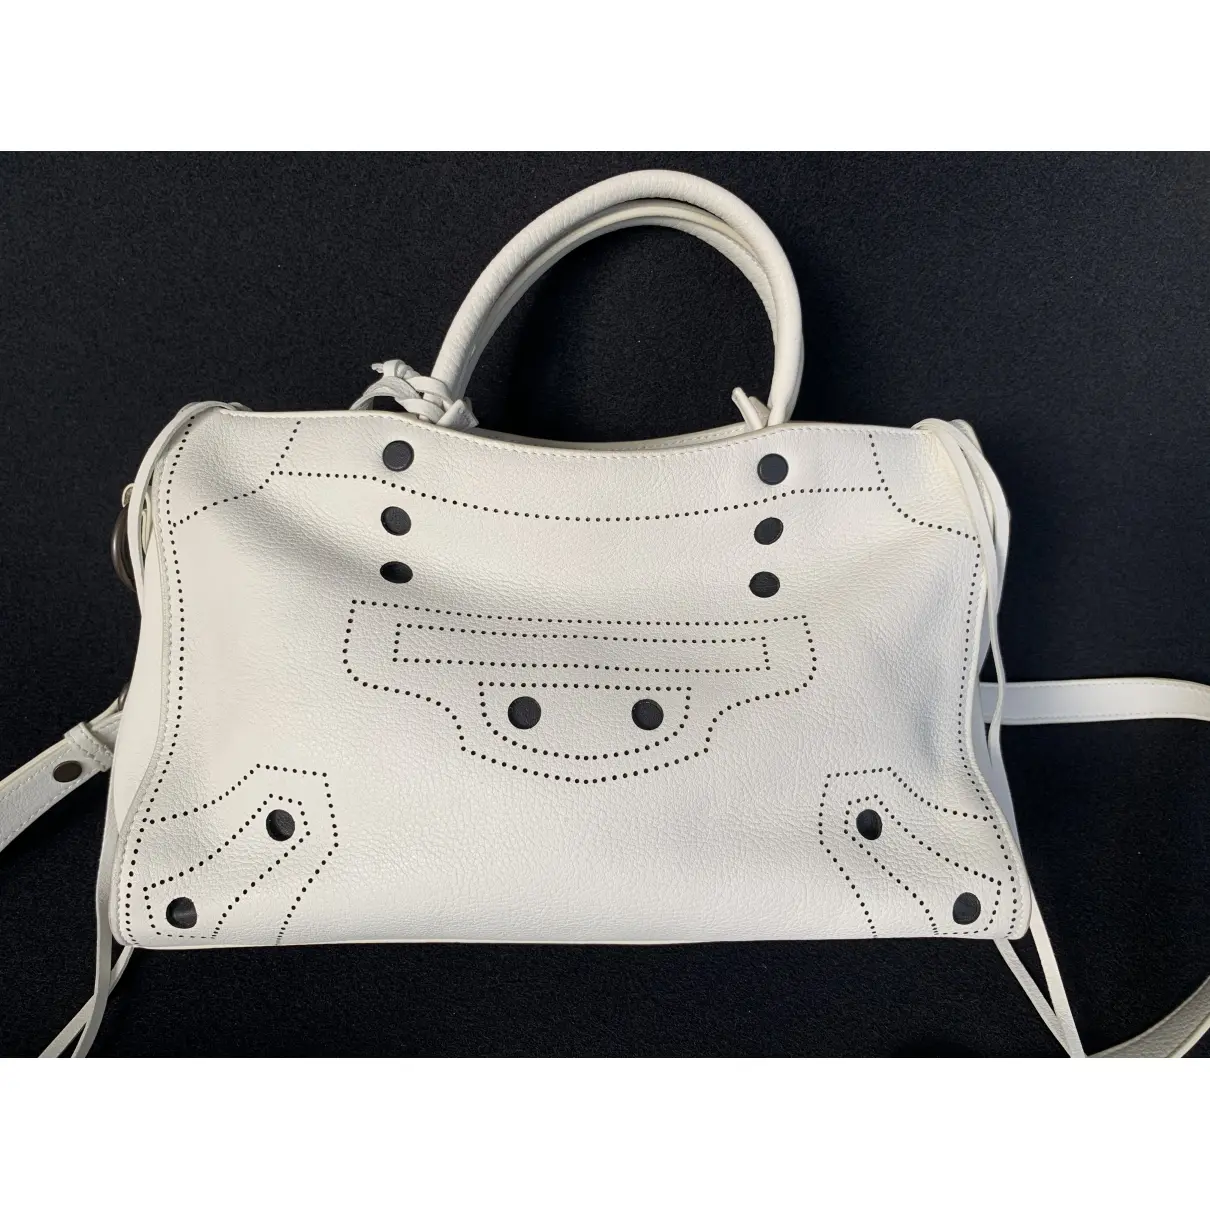 Balenciaga Blackout leather handbag for sale